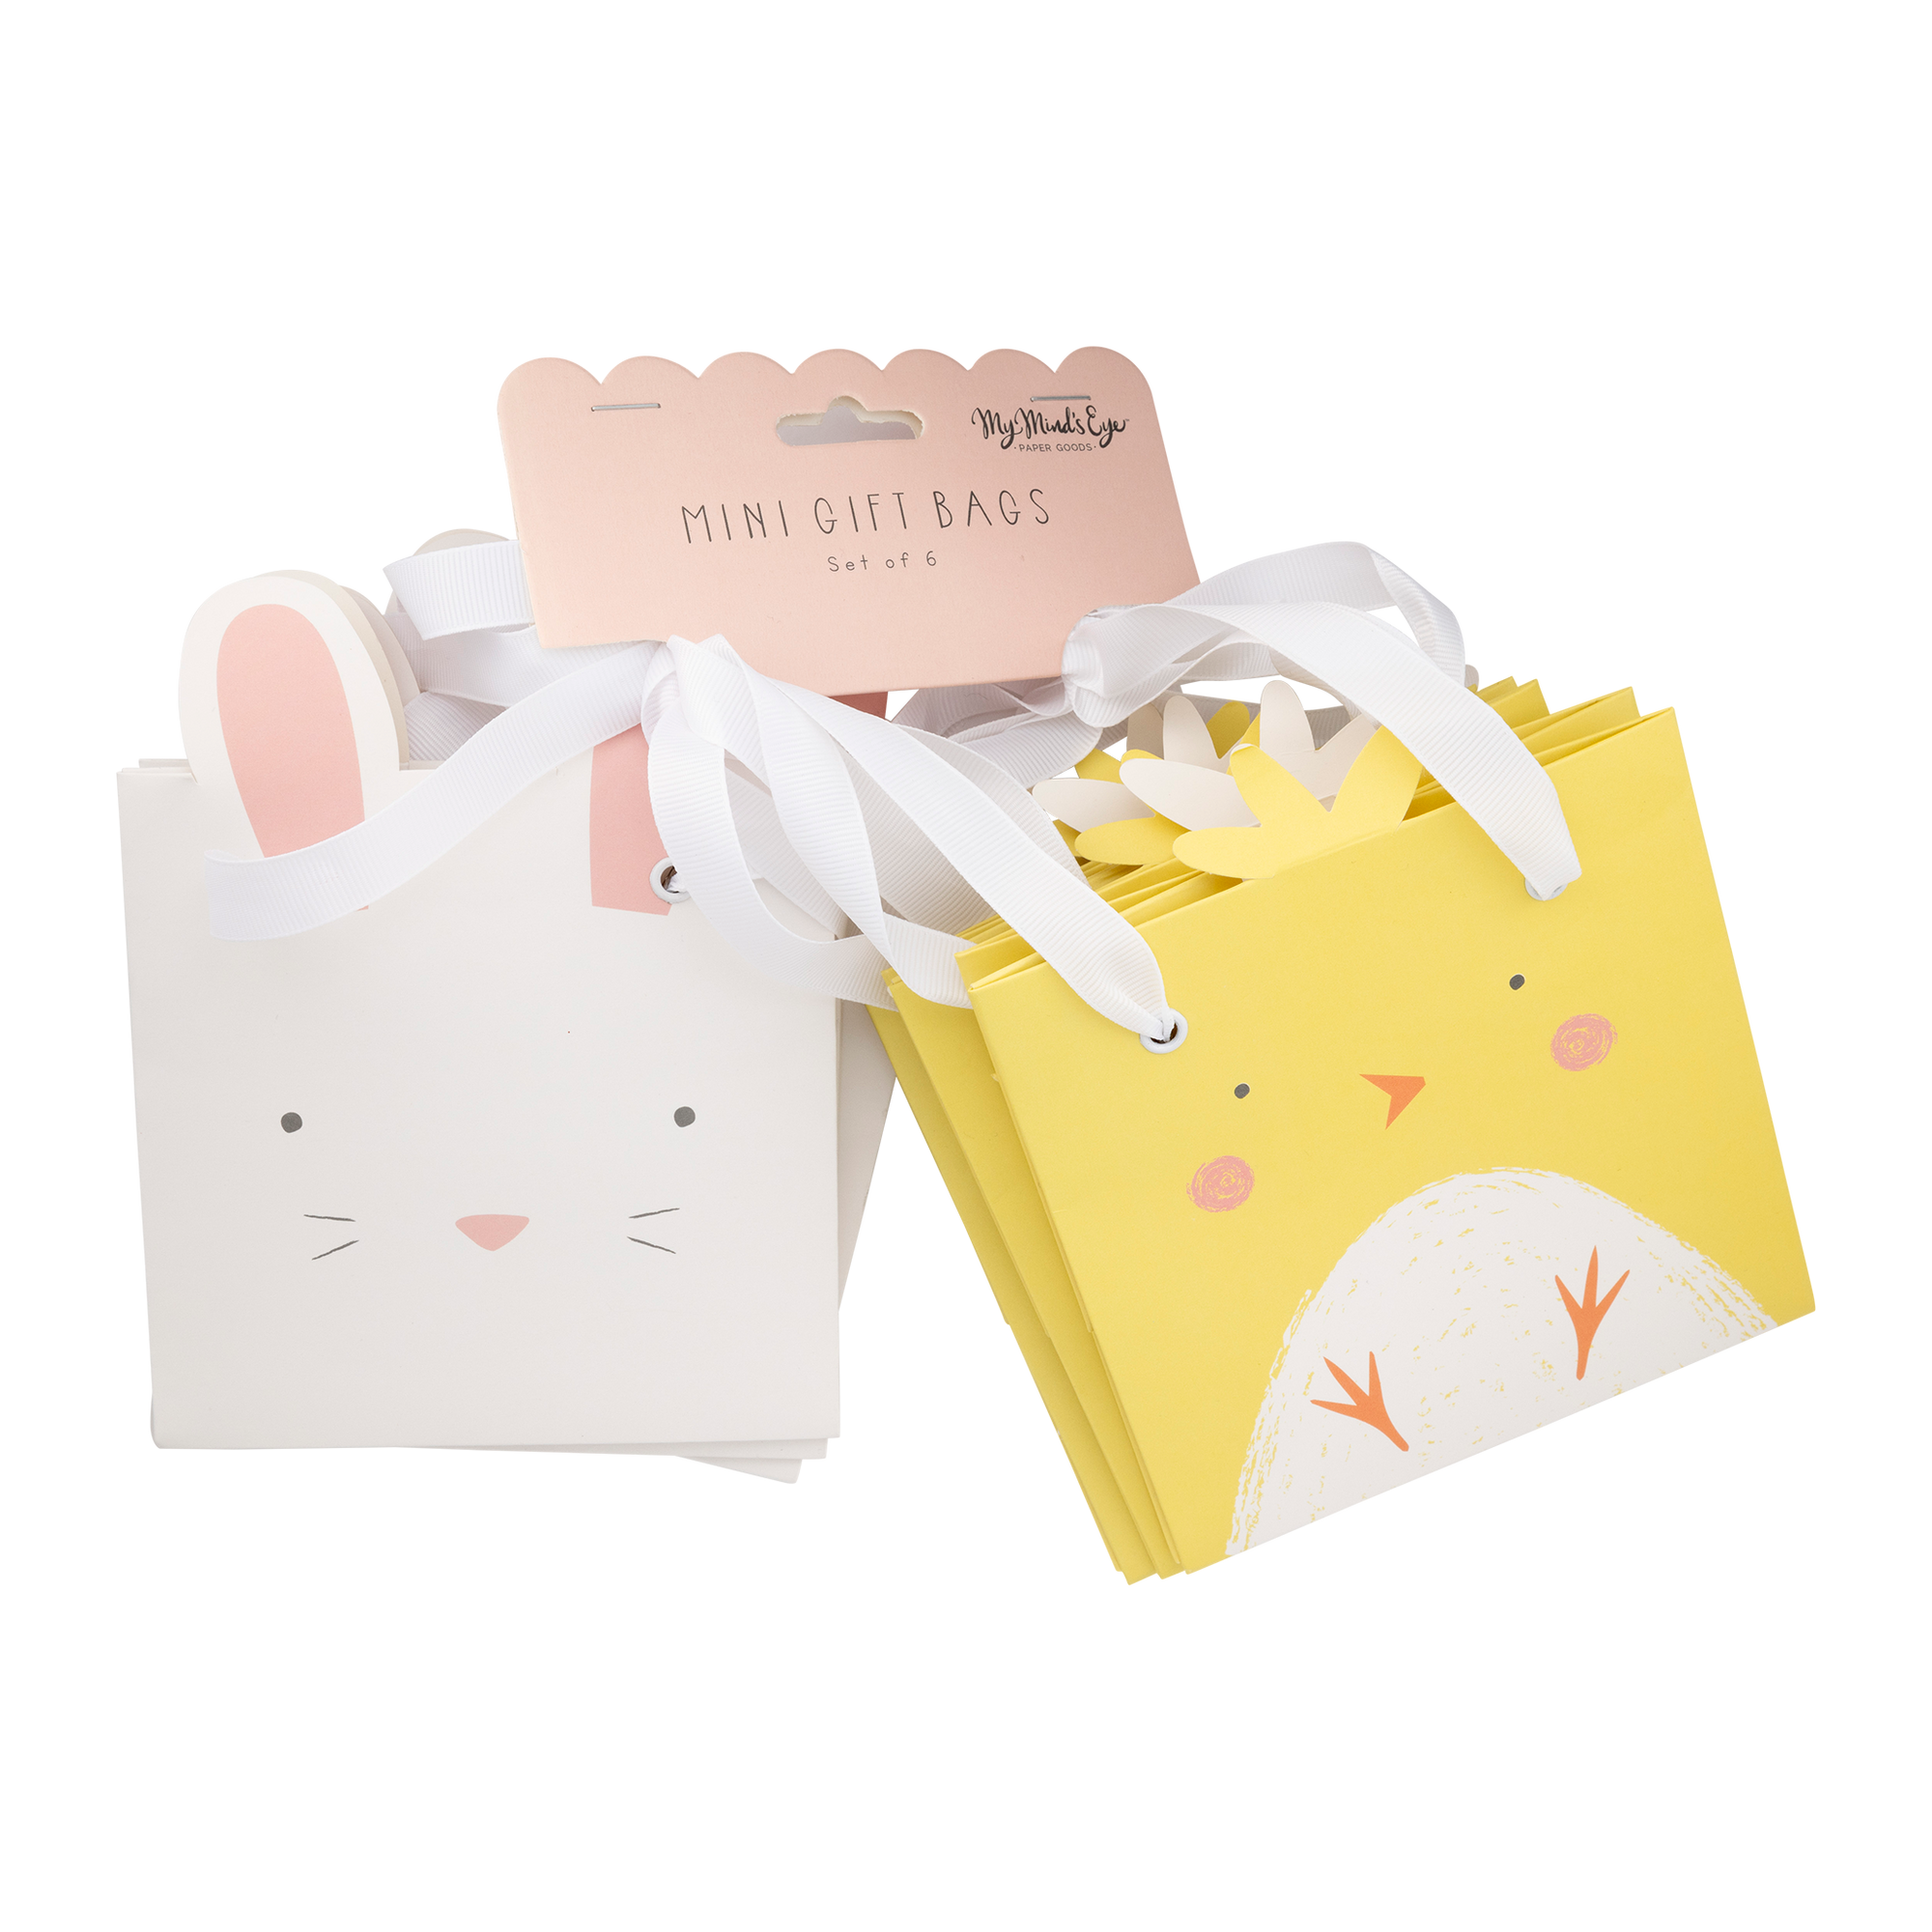 Bunny and Chick Gift Bag Set